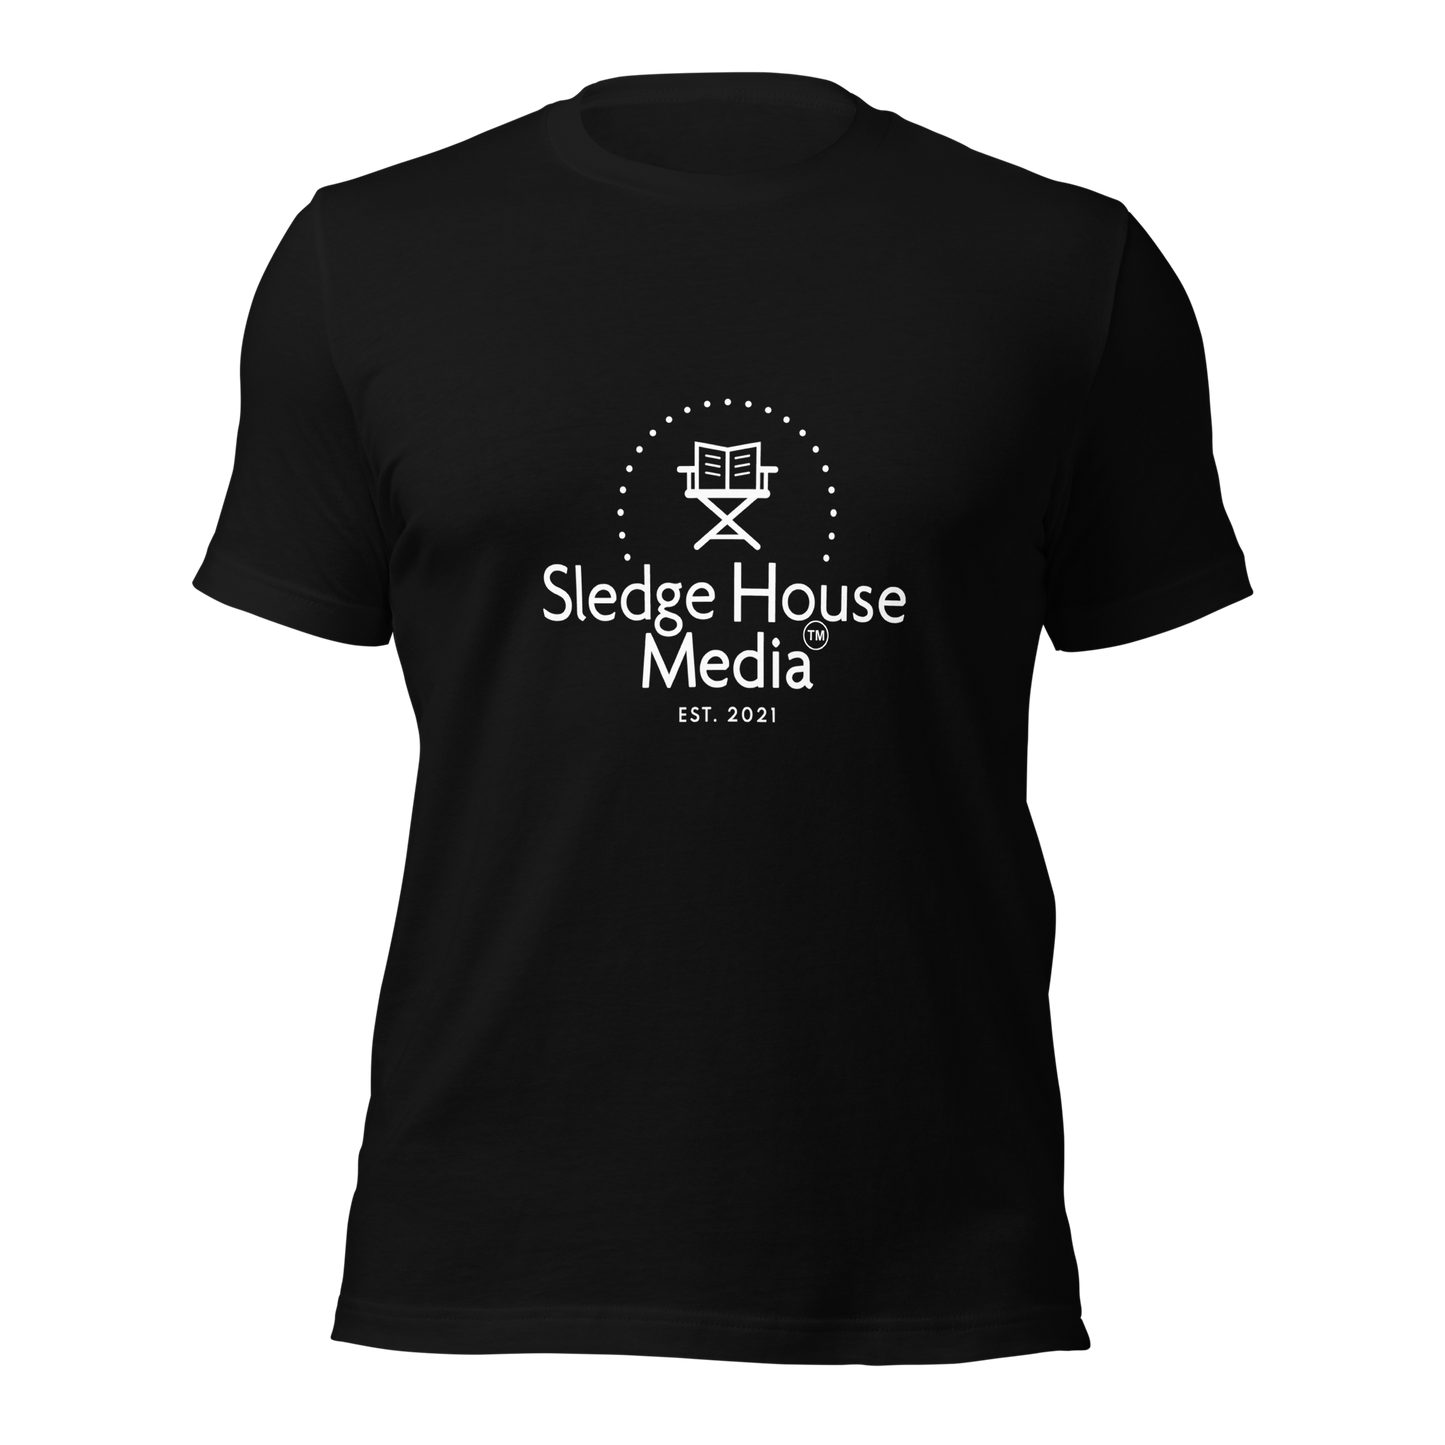 "The OG" Sledge House Media T-shirt unisexe